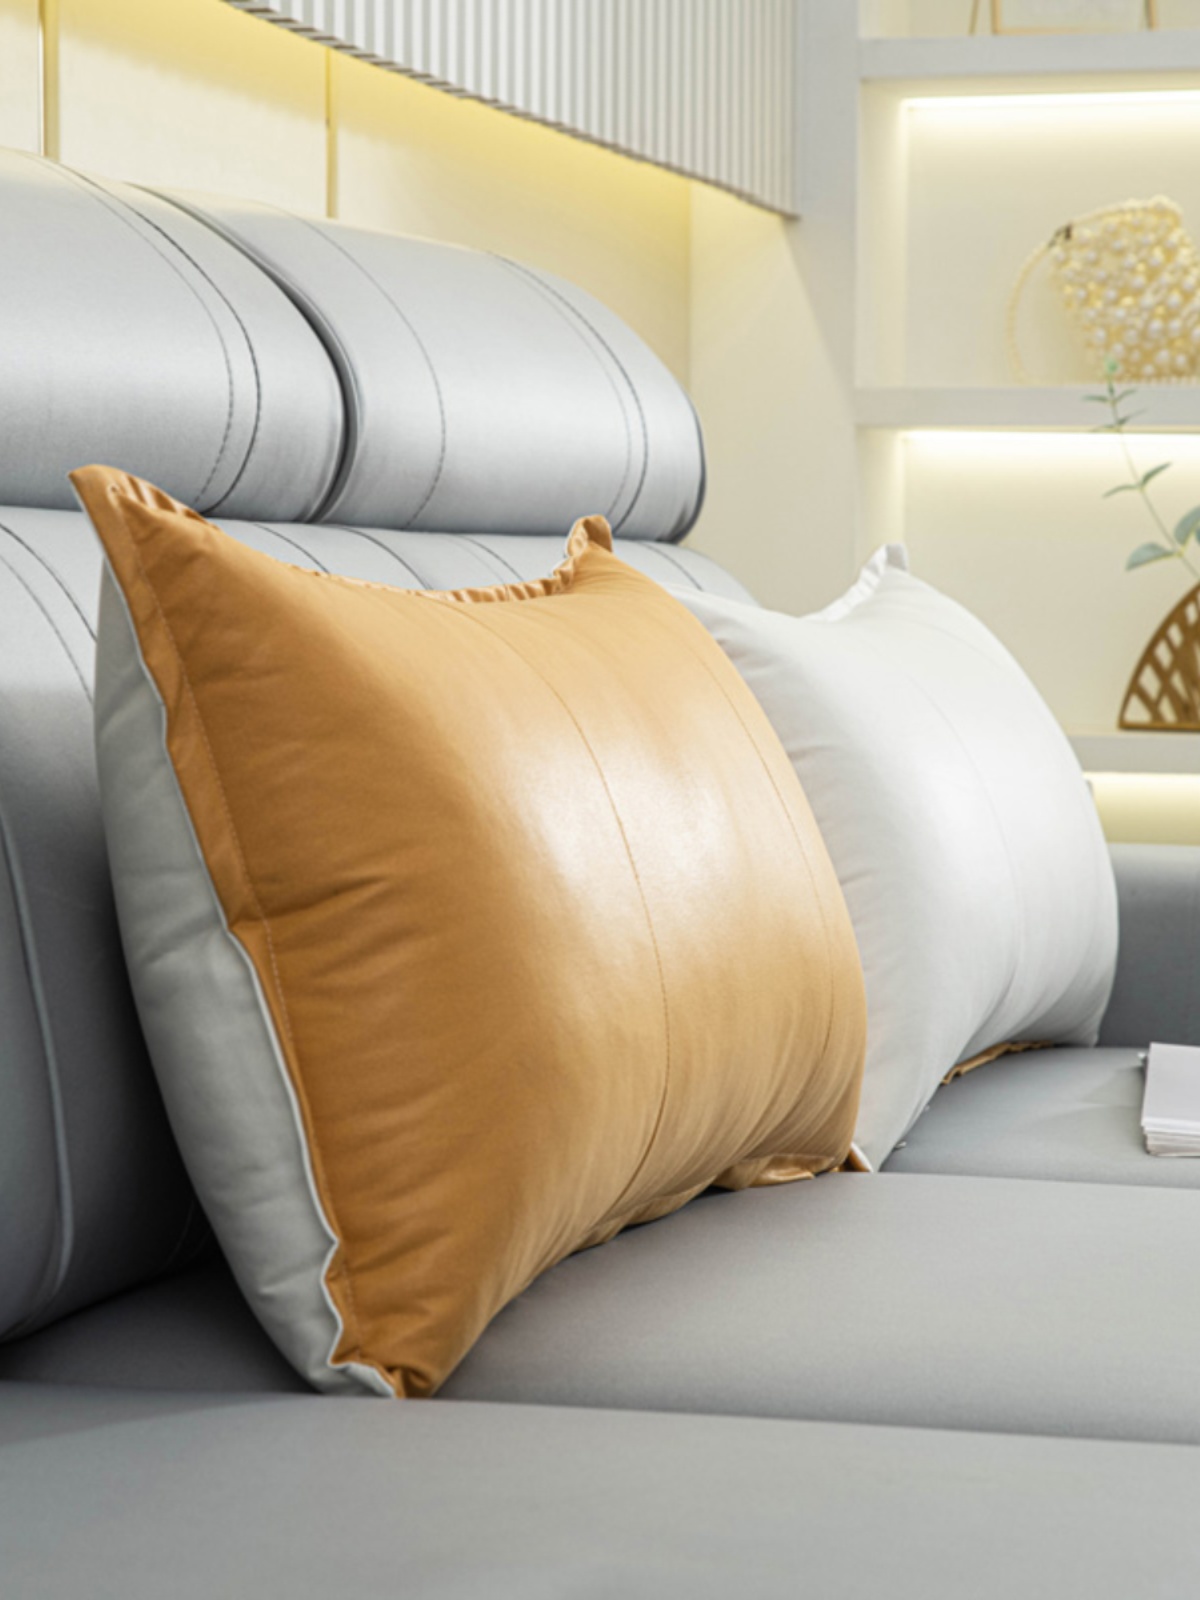 簡約現代風格客廳抱枕 科技布材質 可拆洗護腰靠枕家用軟包榻榻米靠背